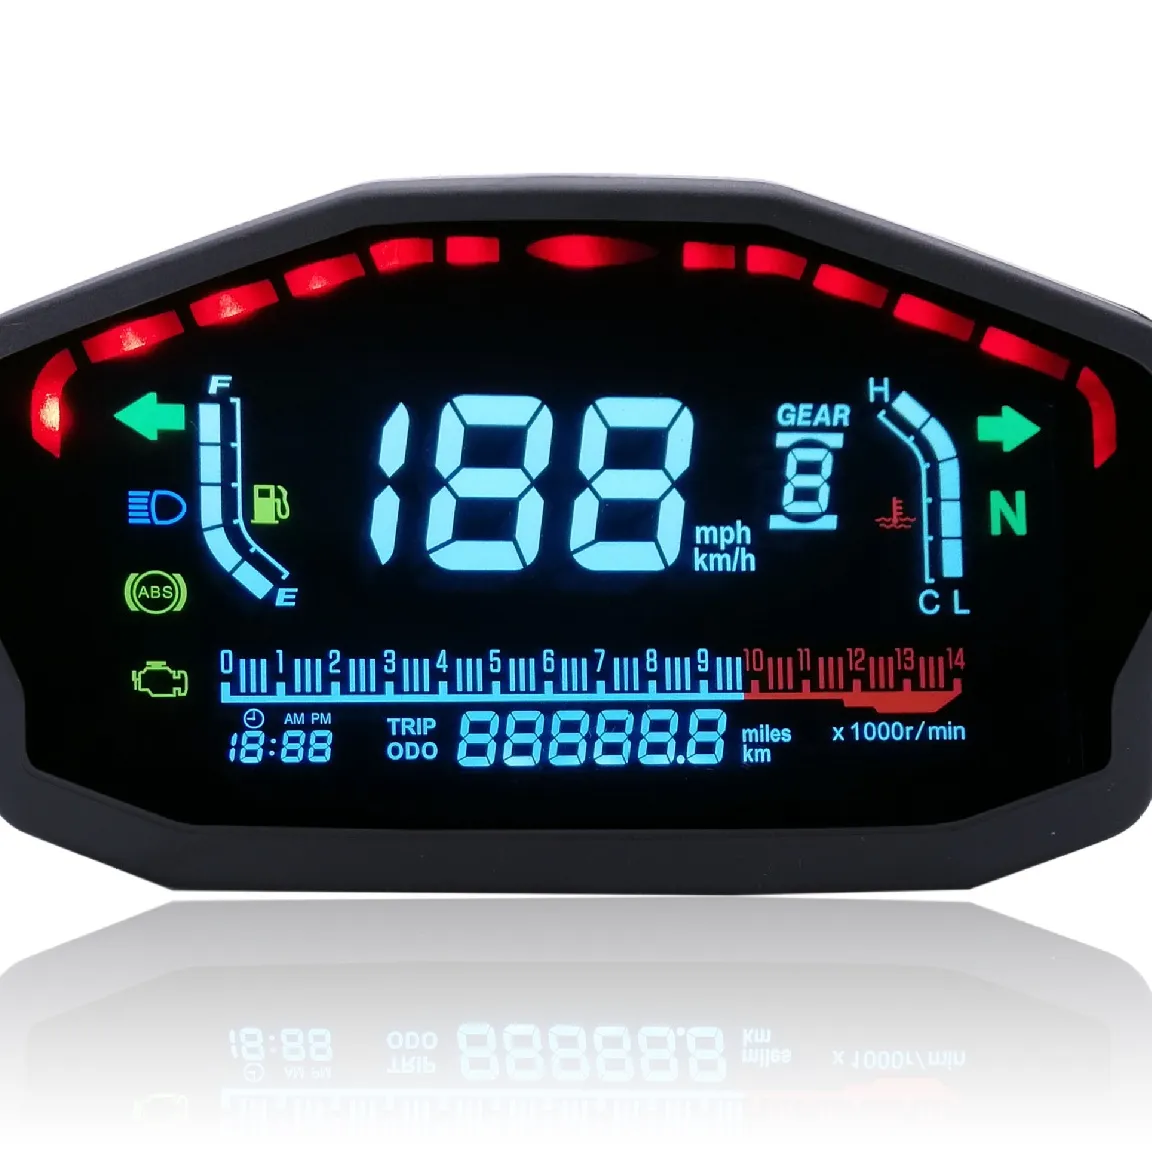 Motosiklet modifiye renkli ekran LCD LCD gösterge hızlı hız su sıcaklığı yağ göstergesi kilometre yağ miktarı ABS hız